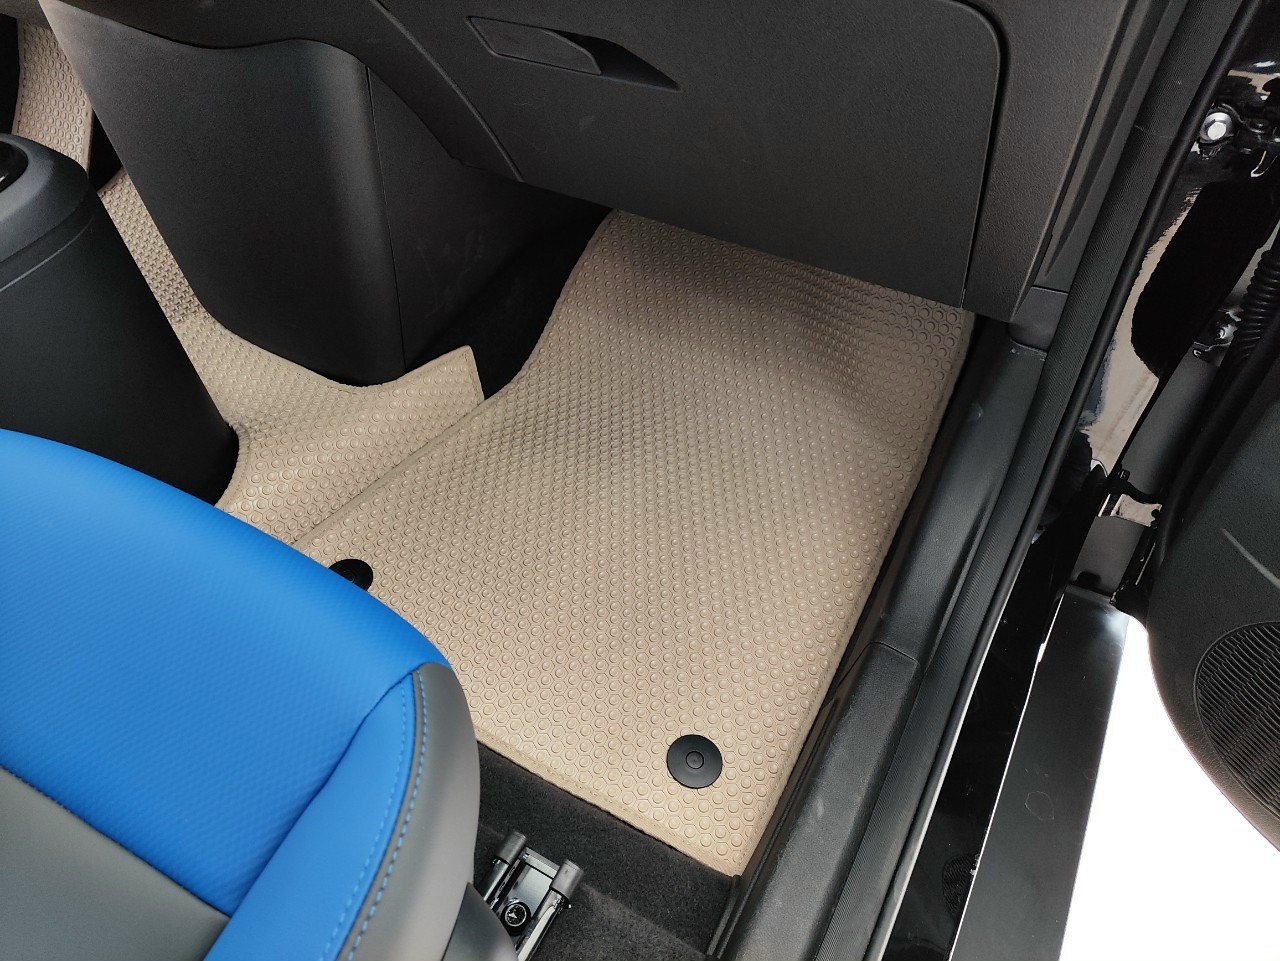 Thảm lót sàn KATA cho xe điện Vinfast VF5 - hàng chính hãng không mùi, chống thấm, chống ẩm mốc, dễ vệ sinh